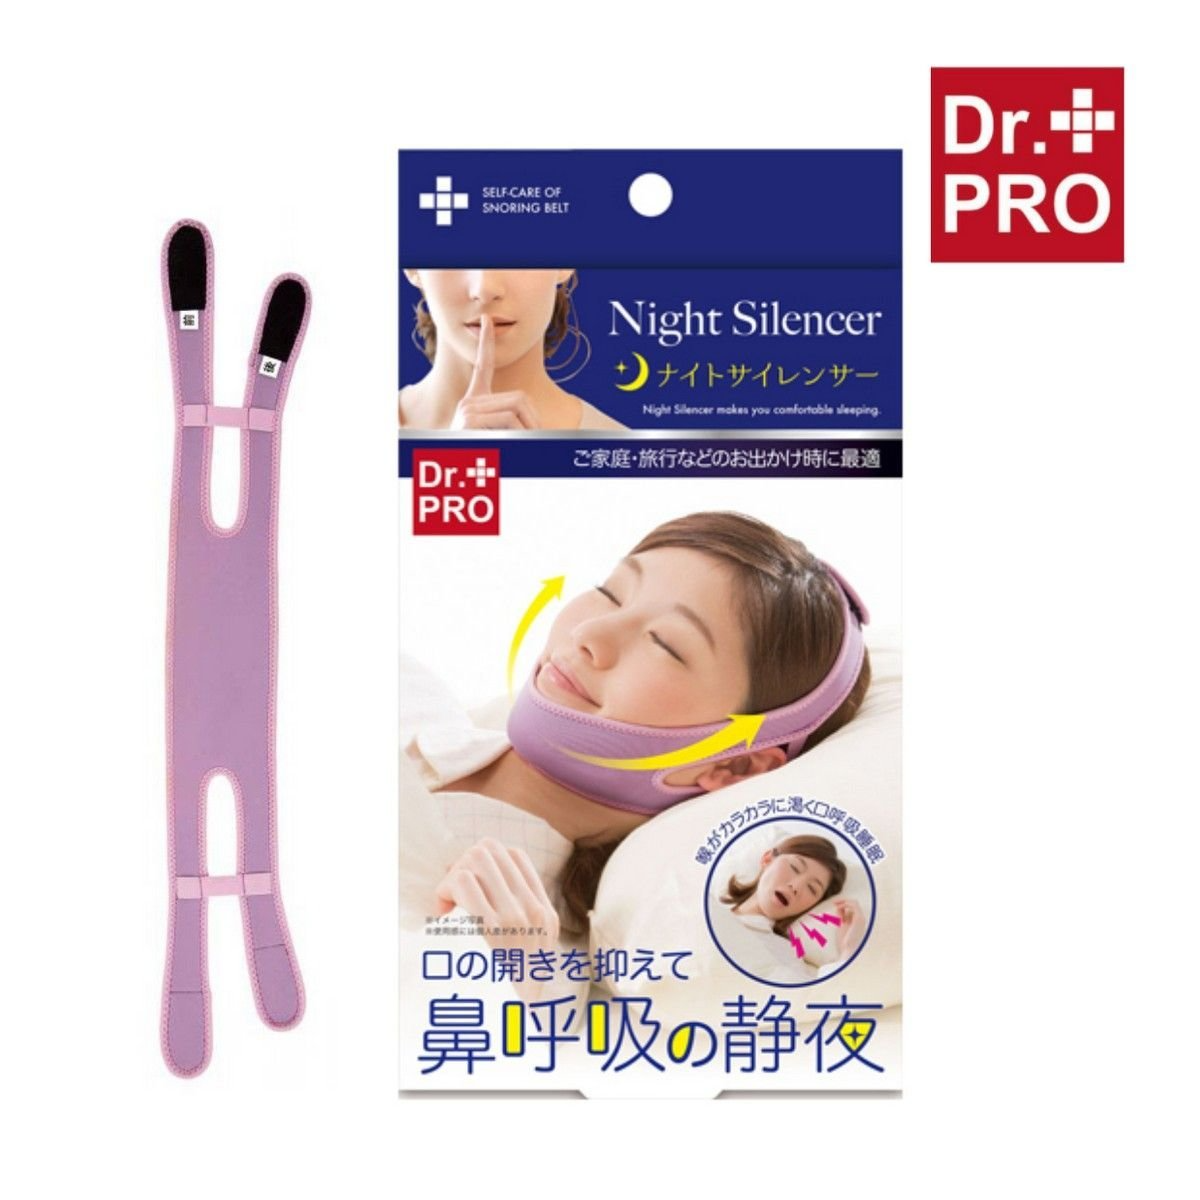 Dr. Pro Anti-snoring Night Silencer